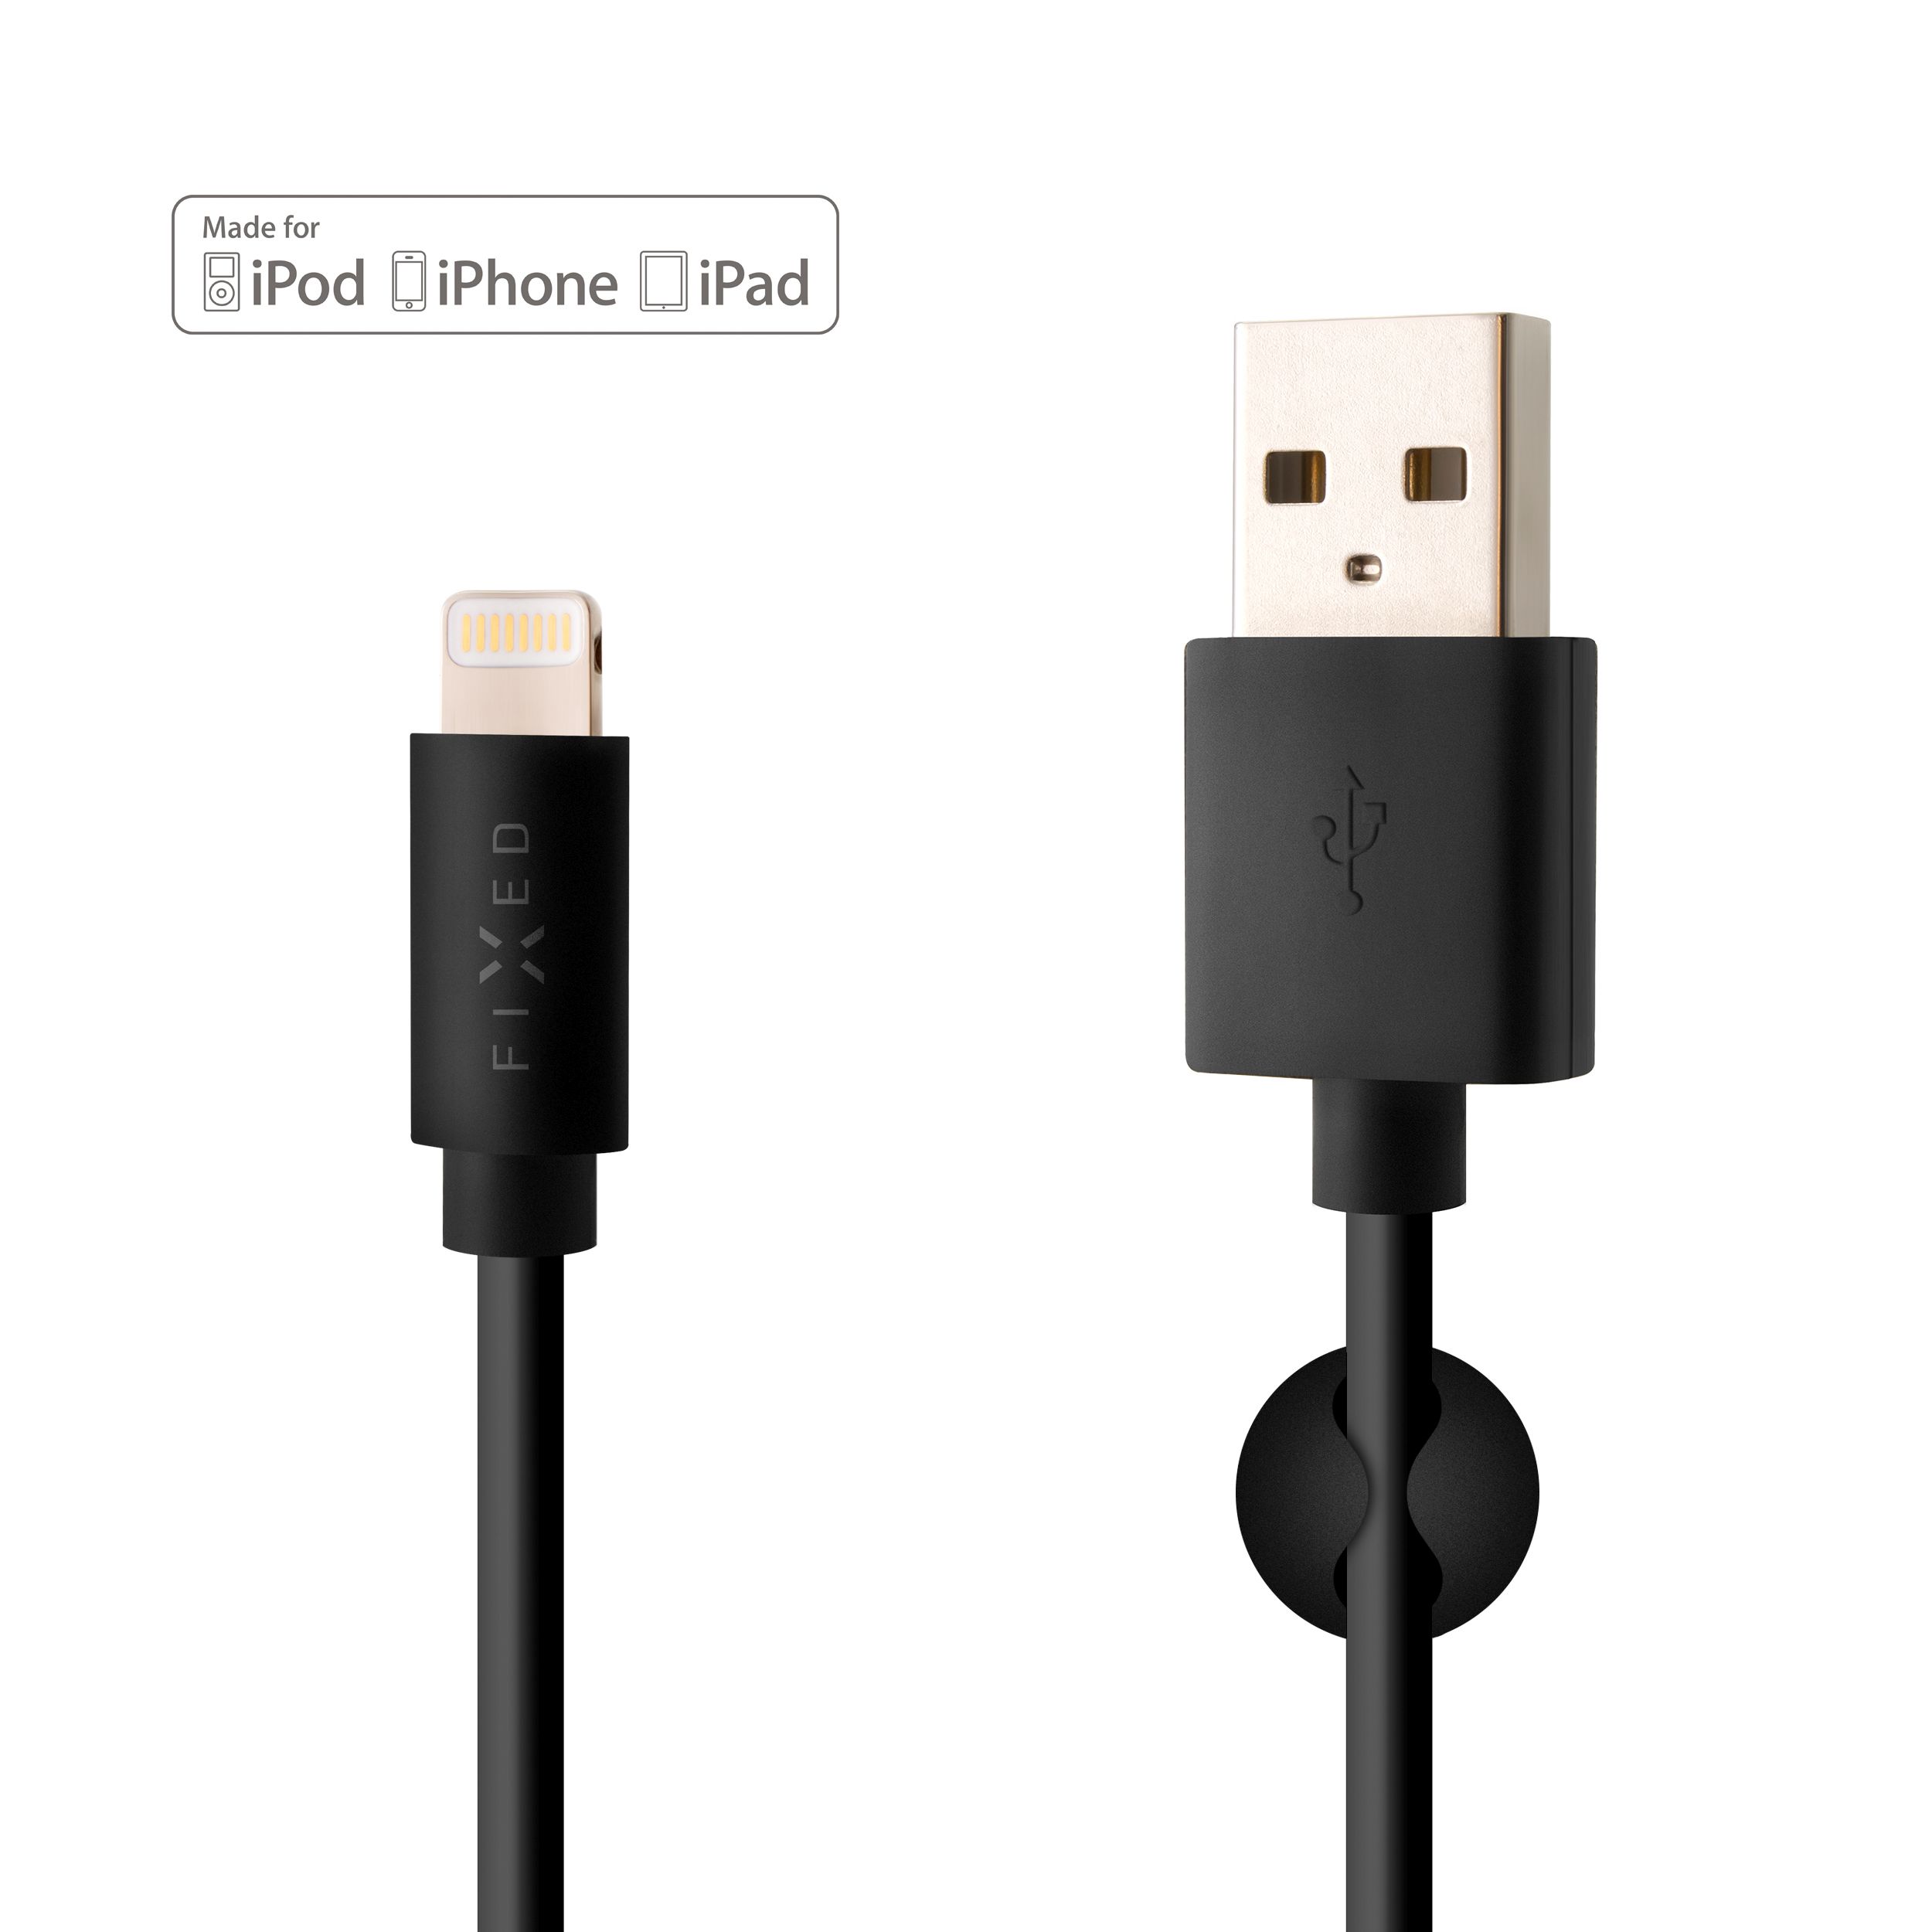 Dlouhý datový a nabíjecí kabel s konektory USB/Lightning, 2 metry, MFI certifikace, černý